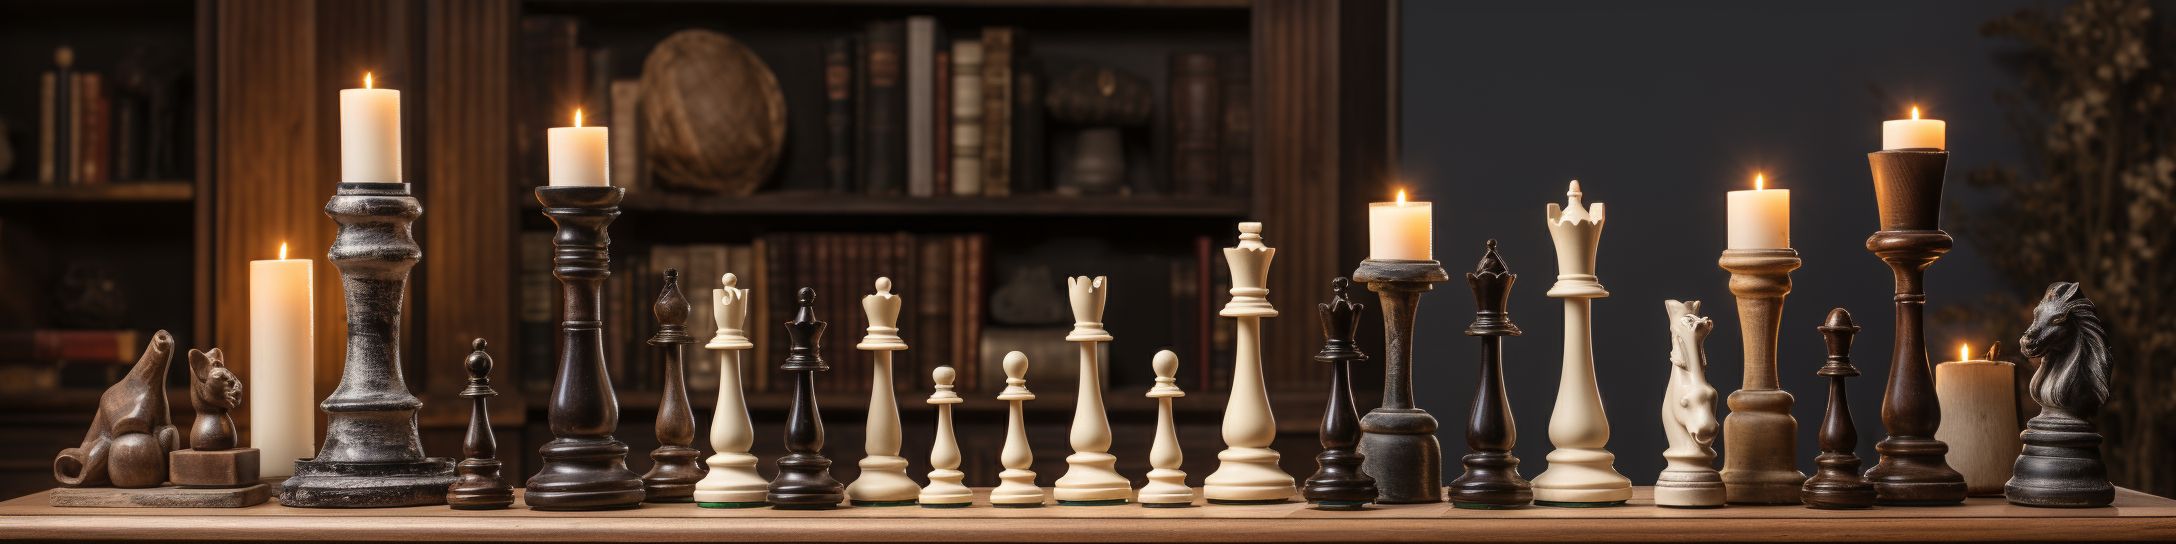 Réputation des marques célèbres de jeux d'échecs